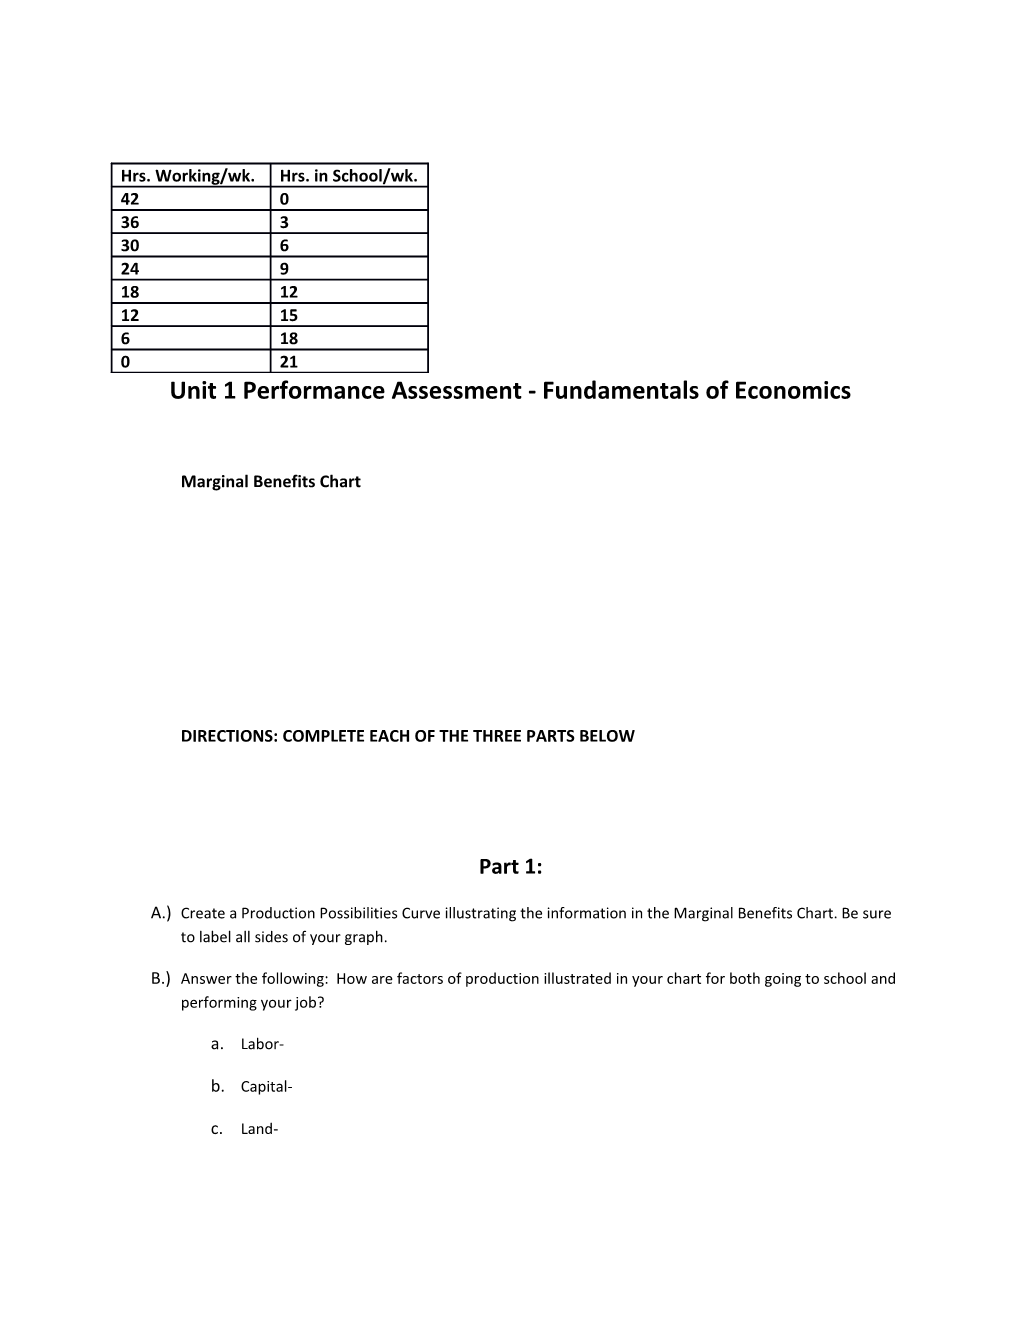 Unit 1 Performance Assessment - Fundamentals of Economics